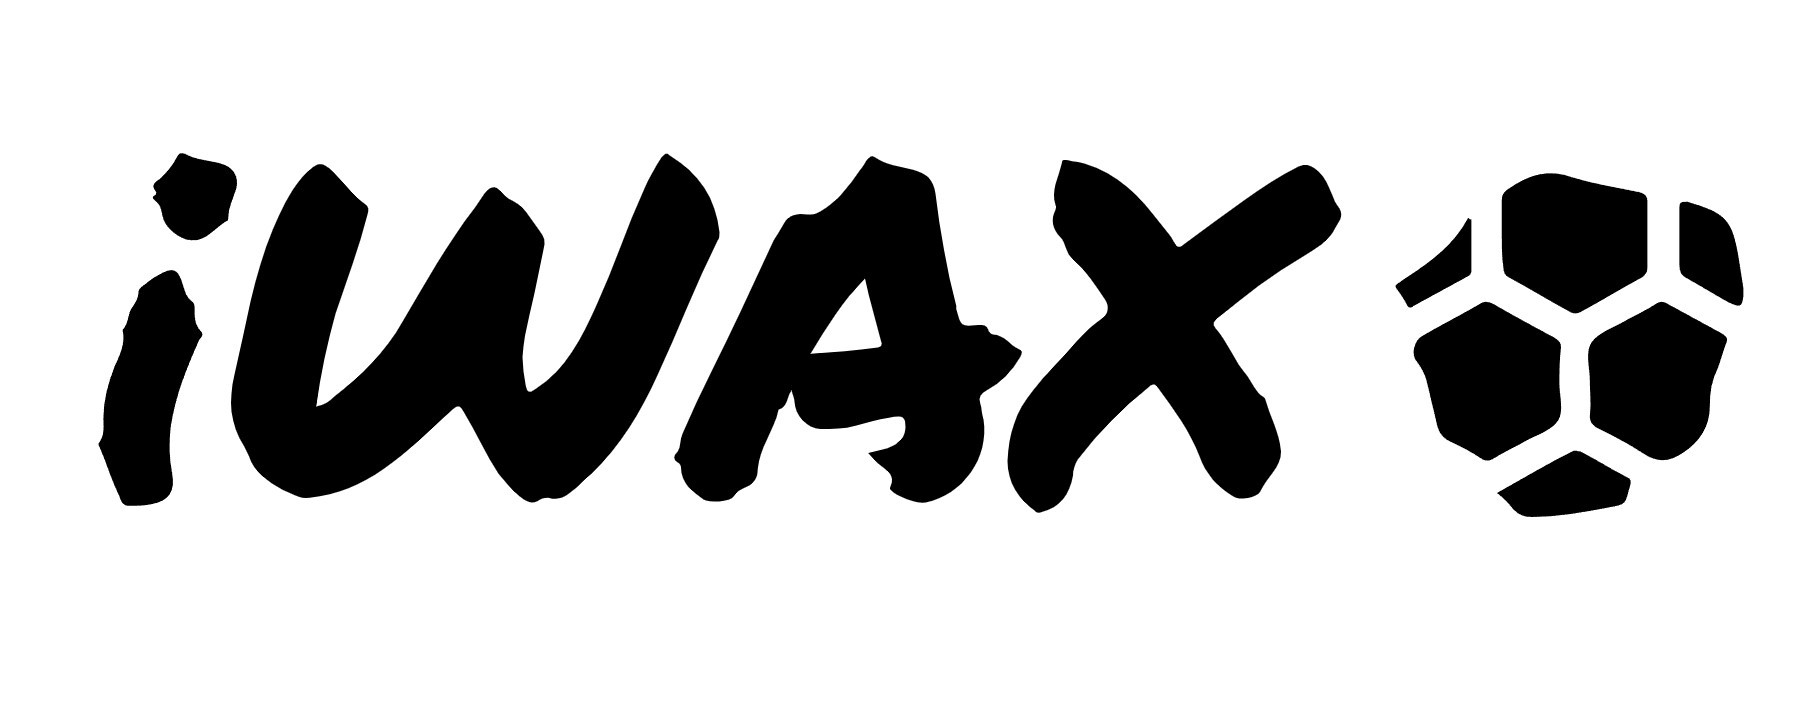 iWax